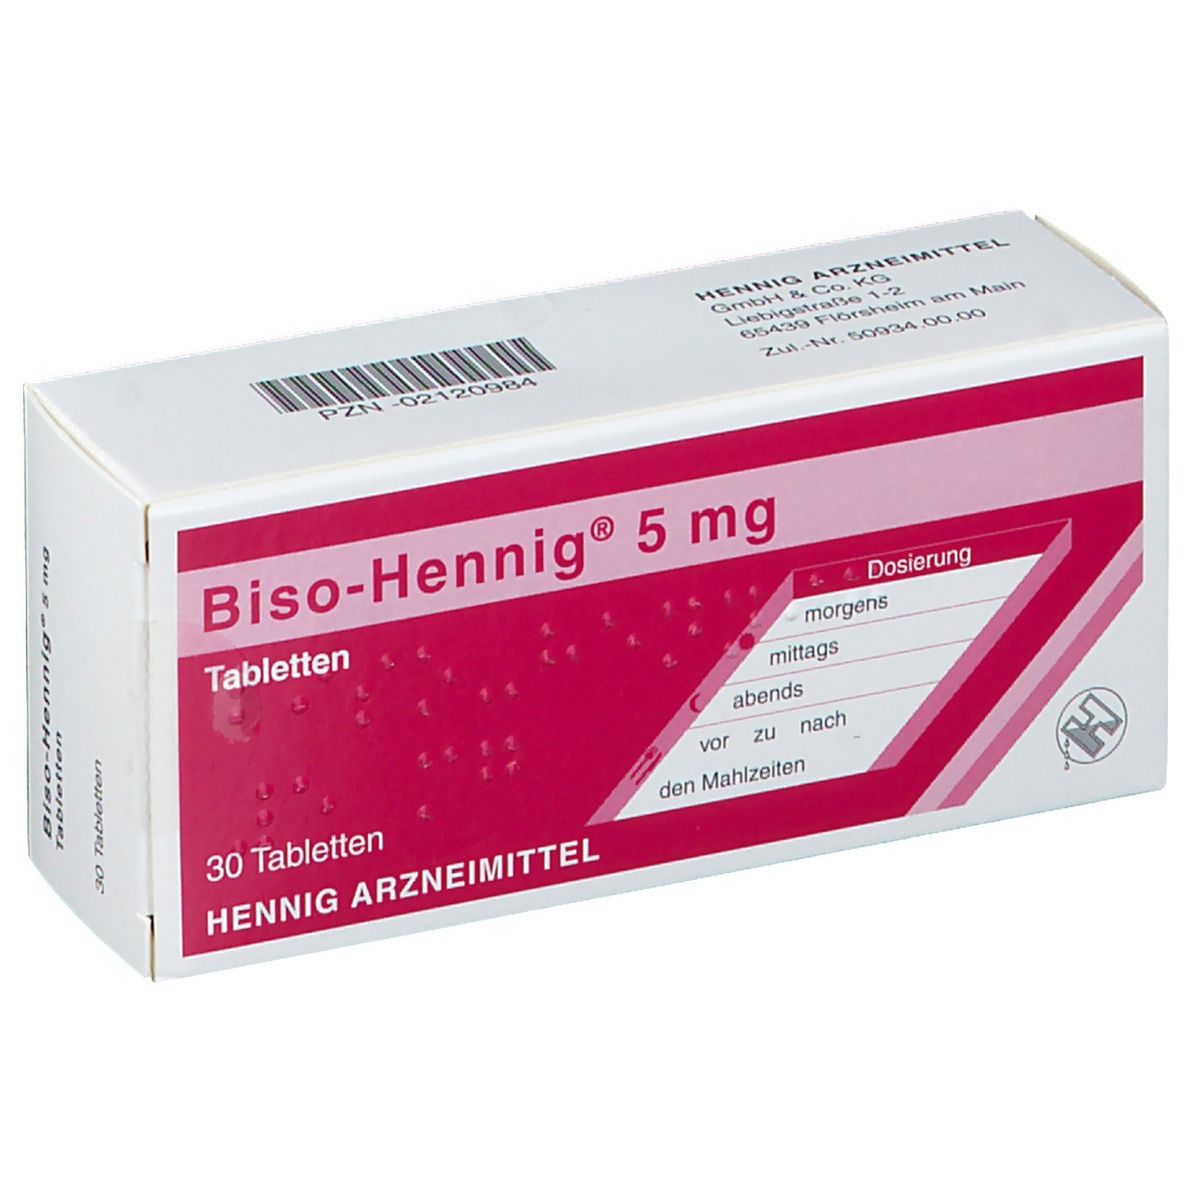 Biso-Hennig® 5 mg